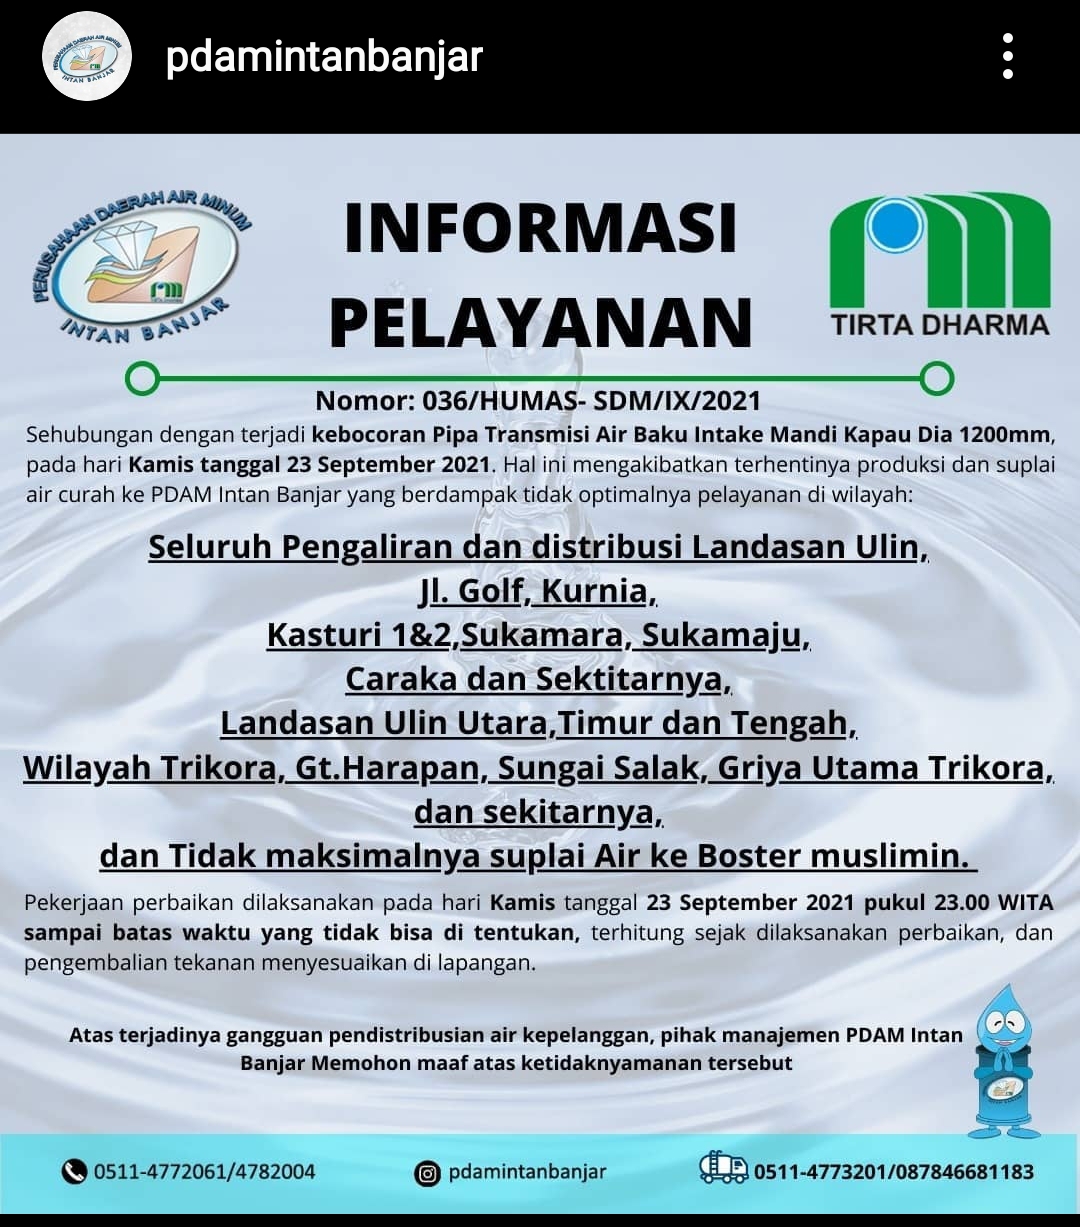 Informasi Pelayanan PDAM Intan Banjar